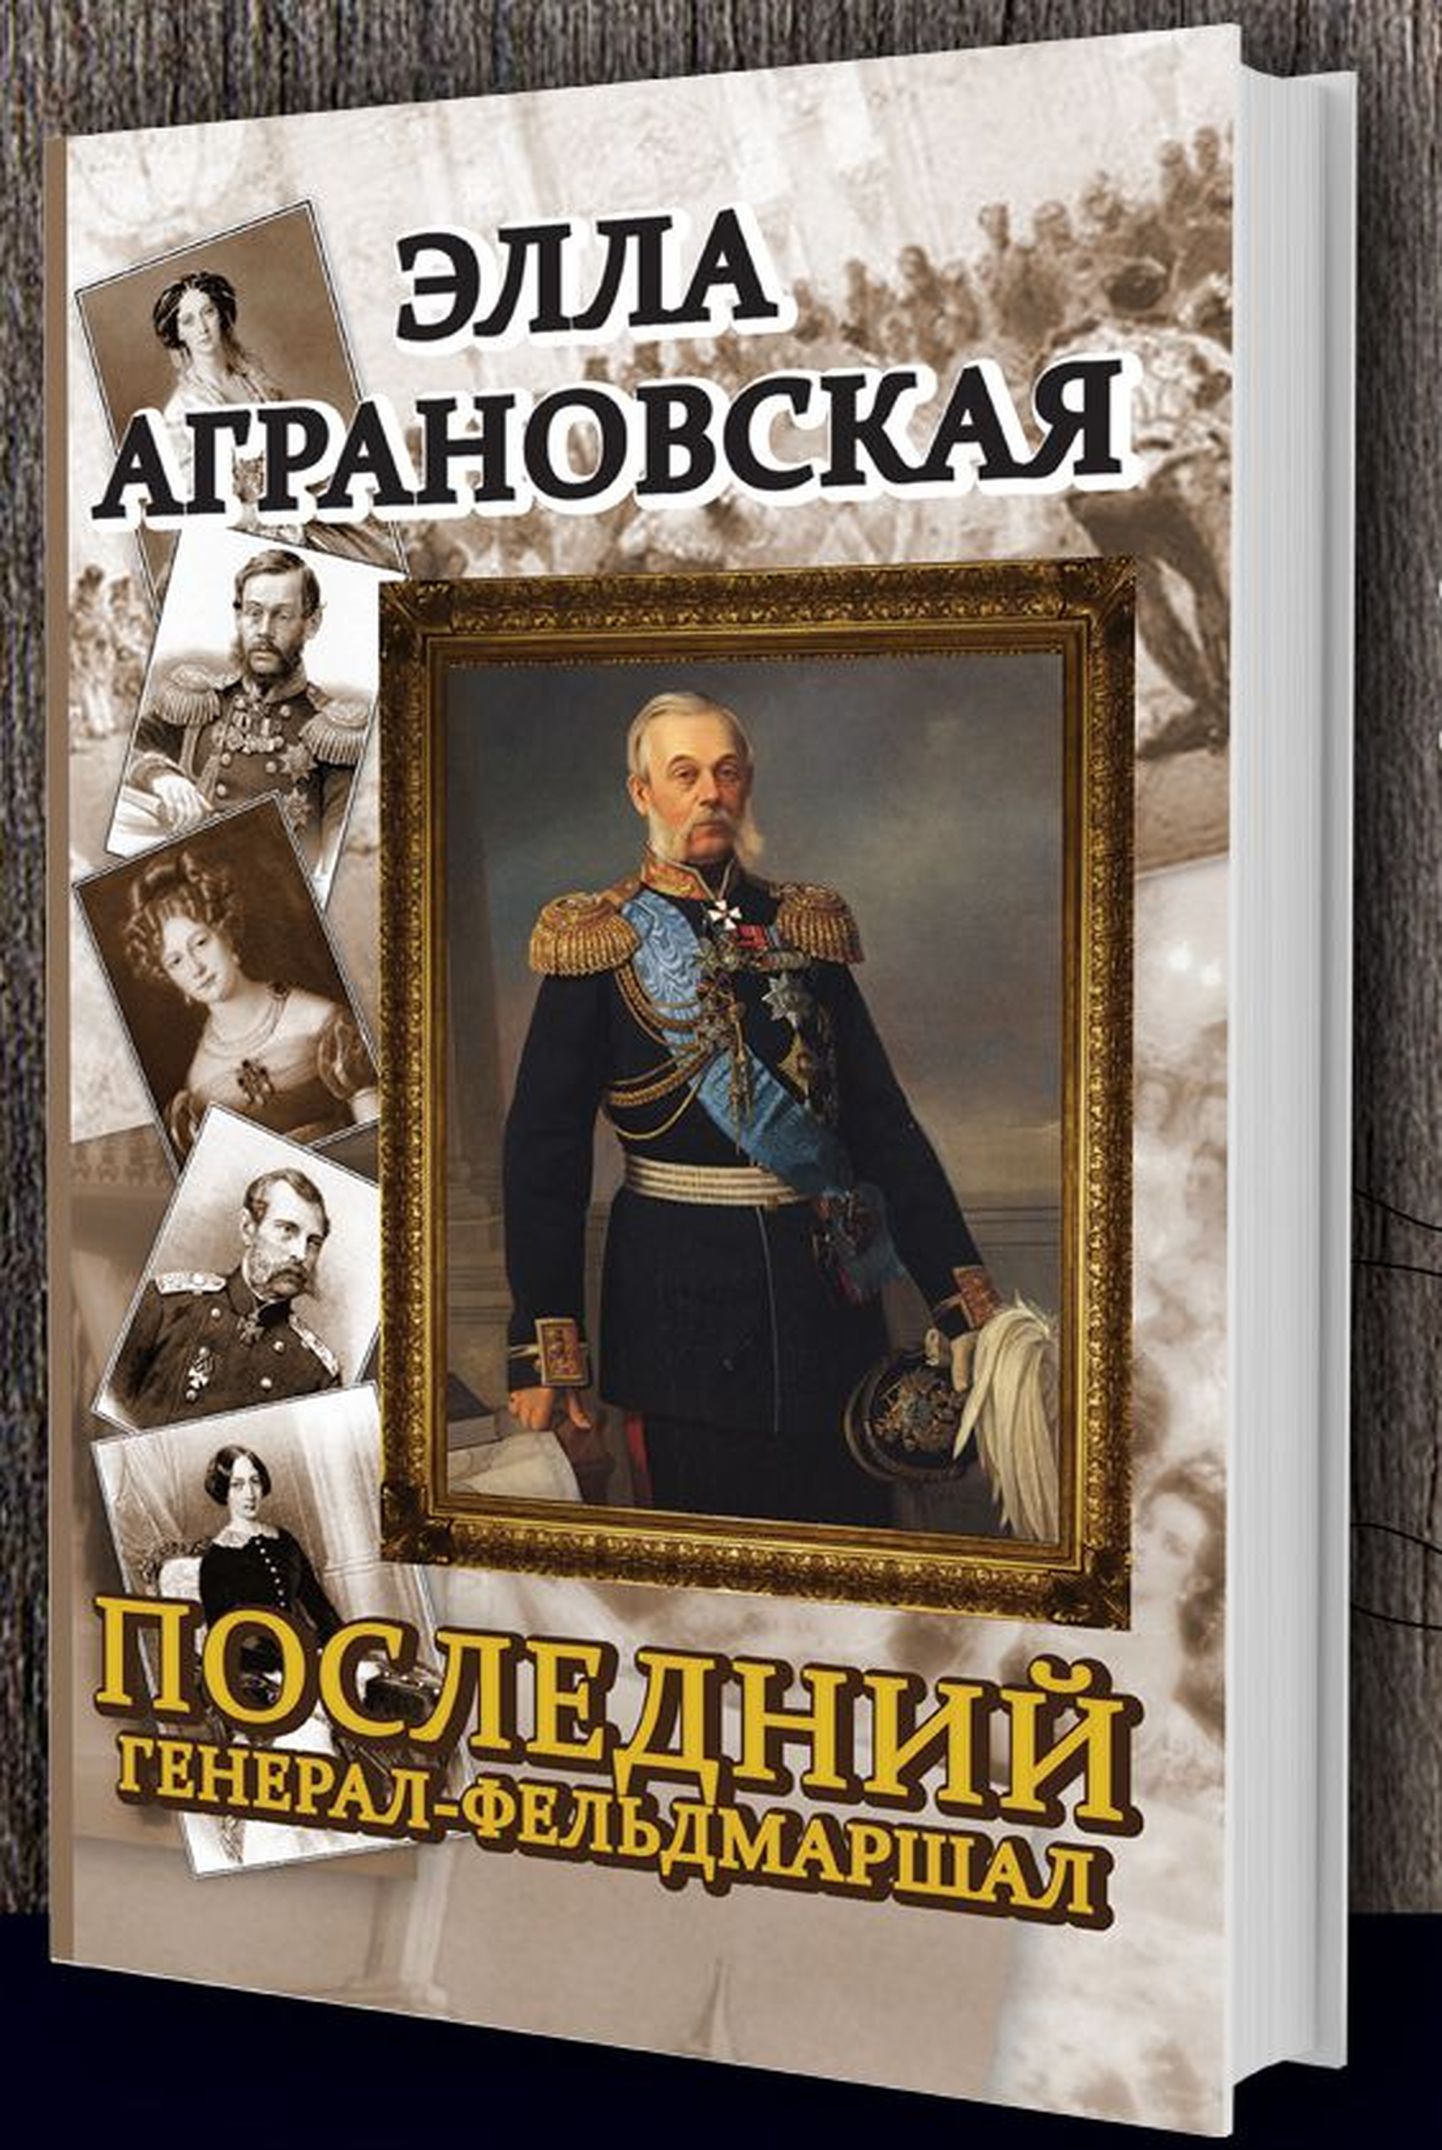 Обложка книги Эллы Аграновской.